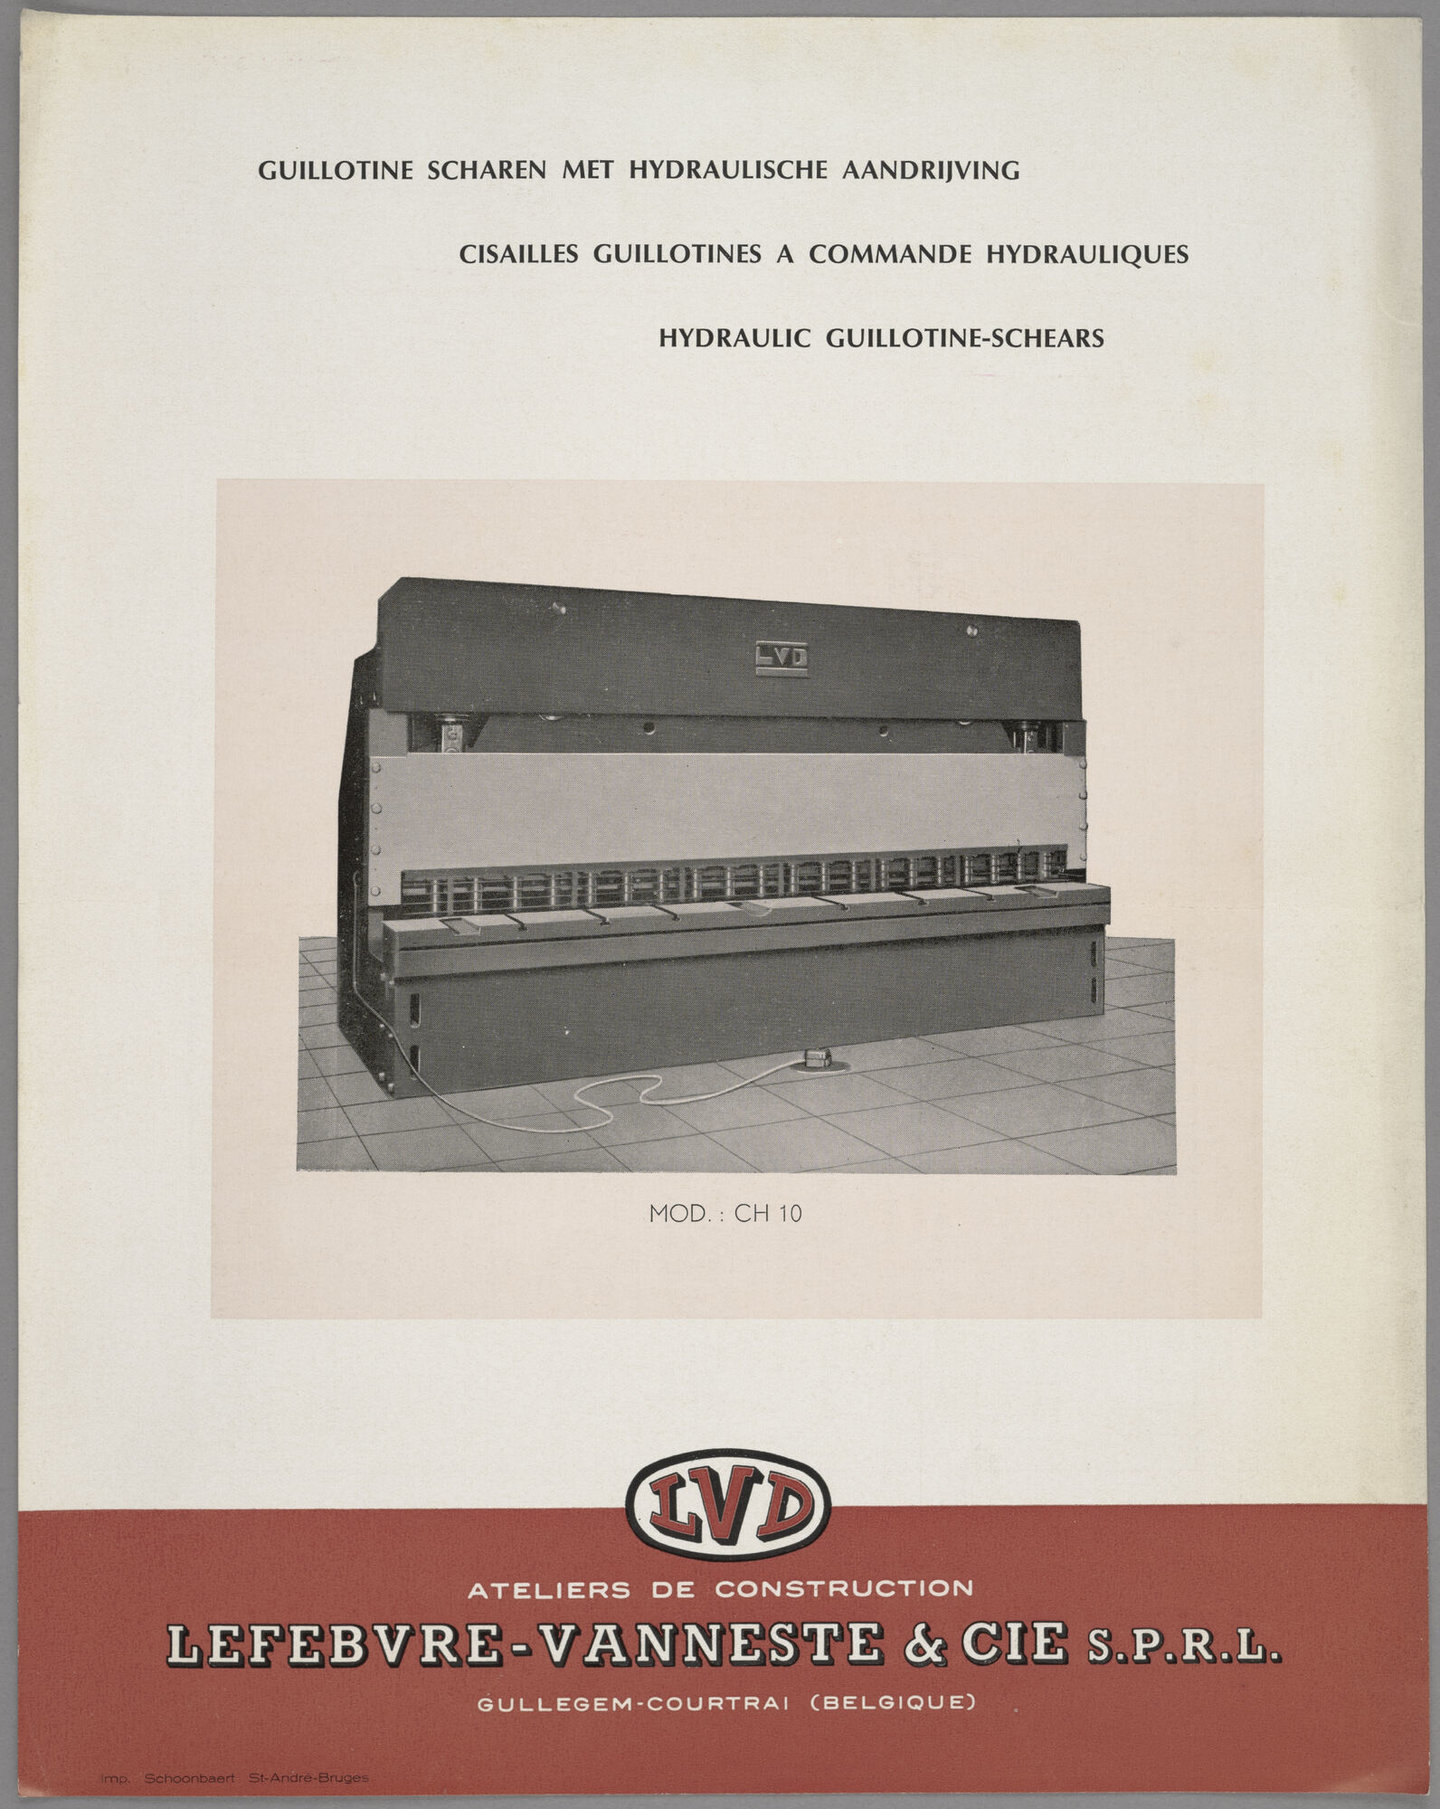 Technische fiche over hydraulische guillotine-scharen geproduceerd door LVD in Gullegem